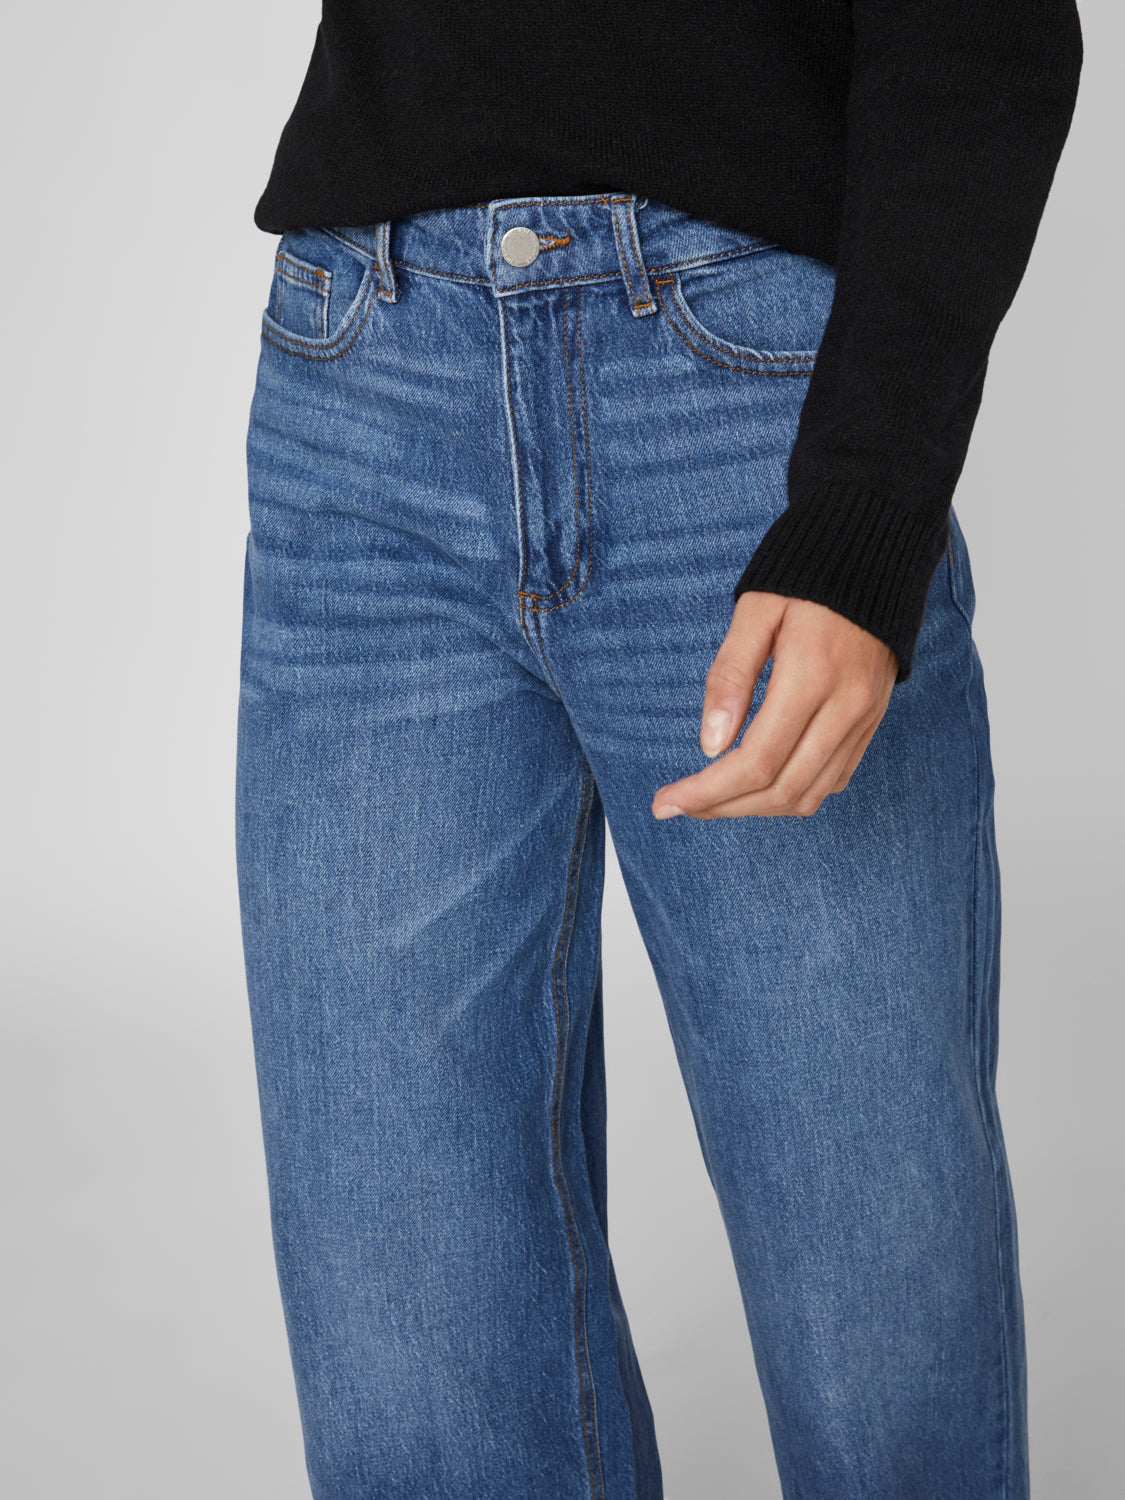 VIFREYA Jeans - Medium Blue Denim